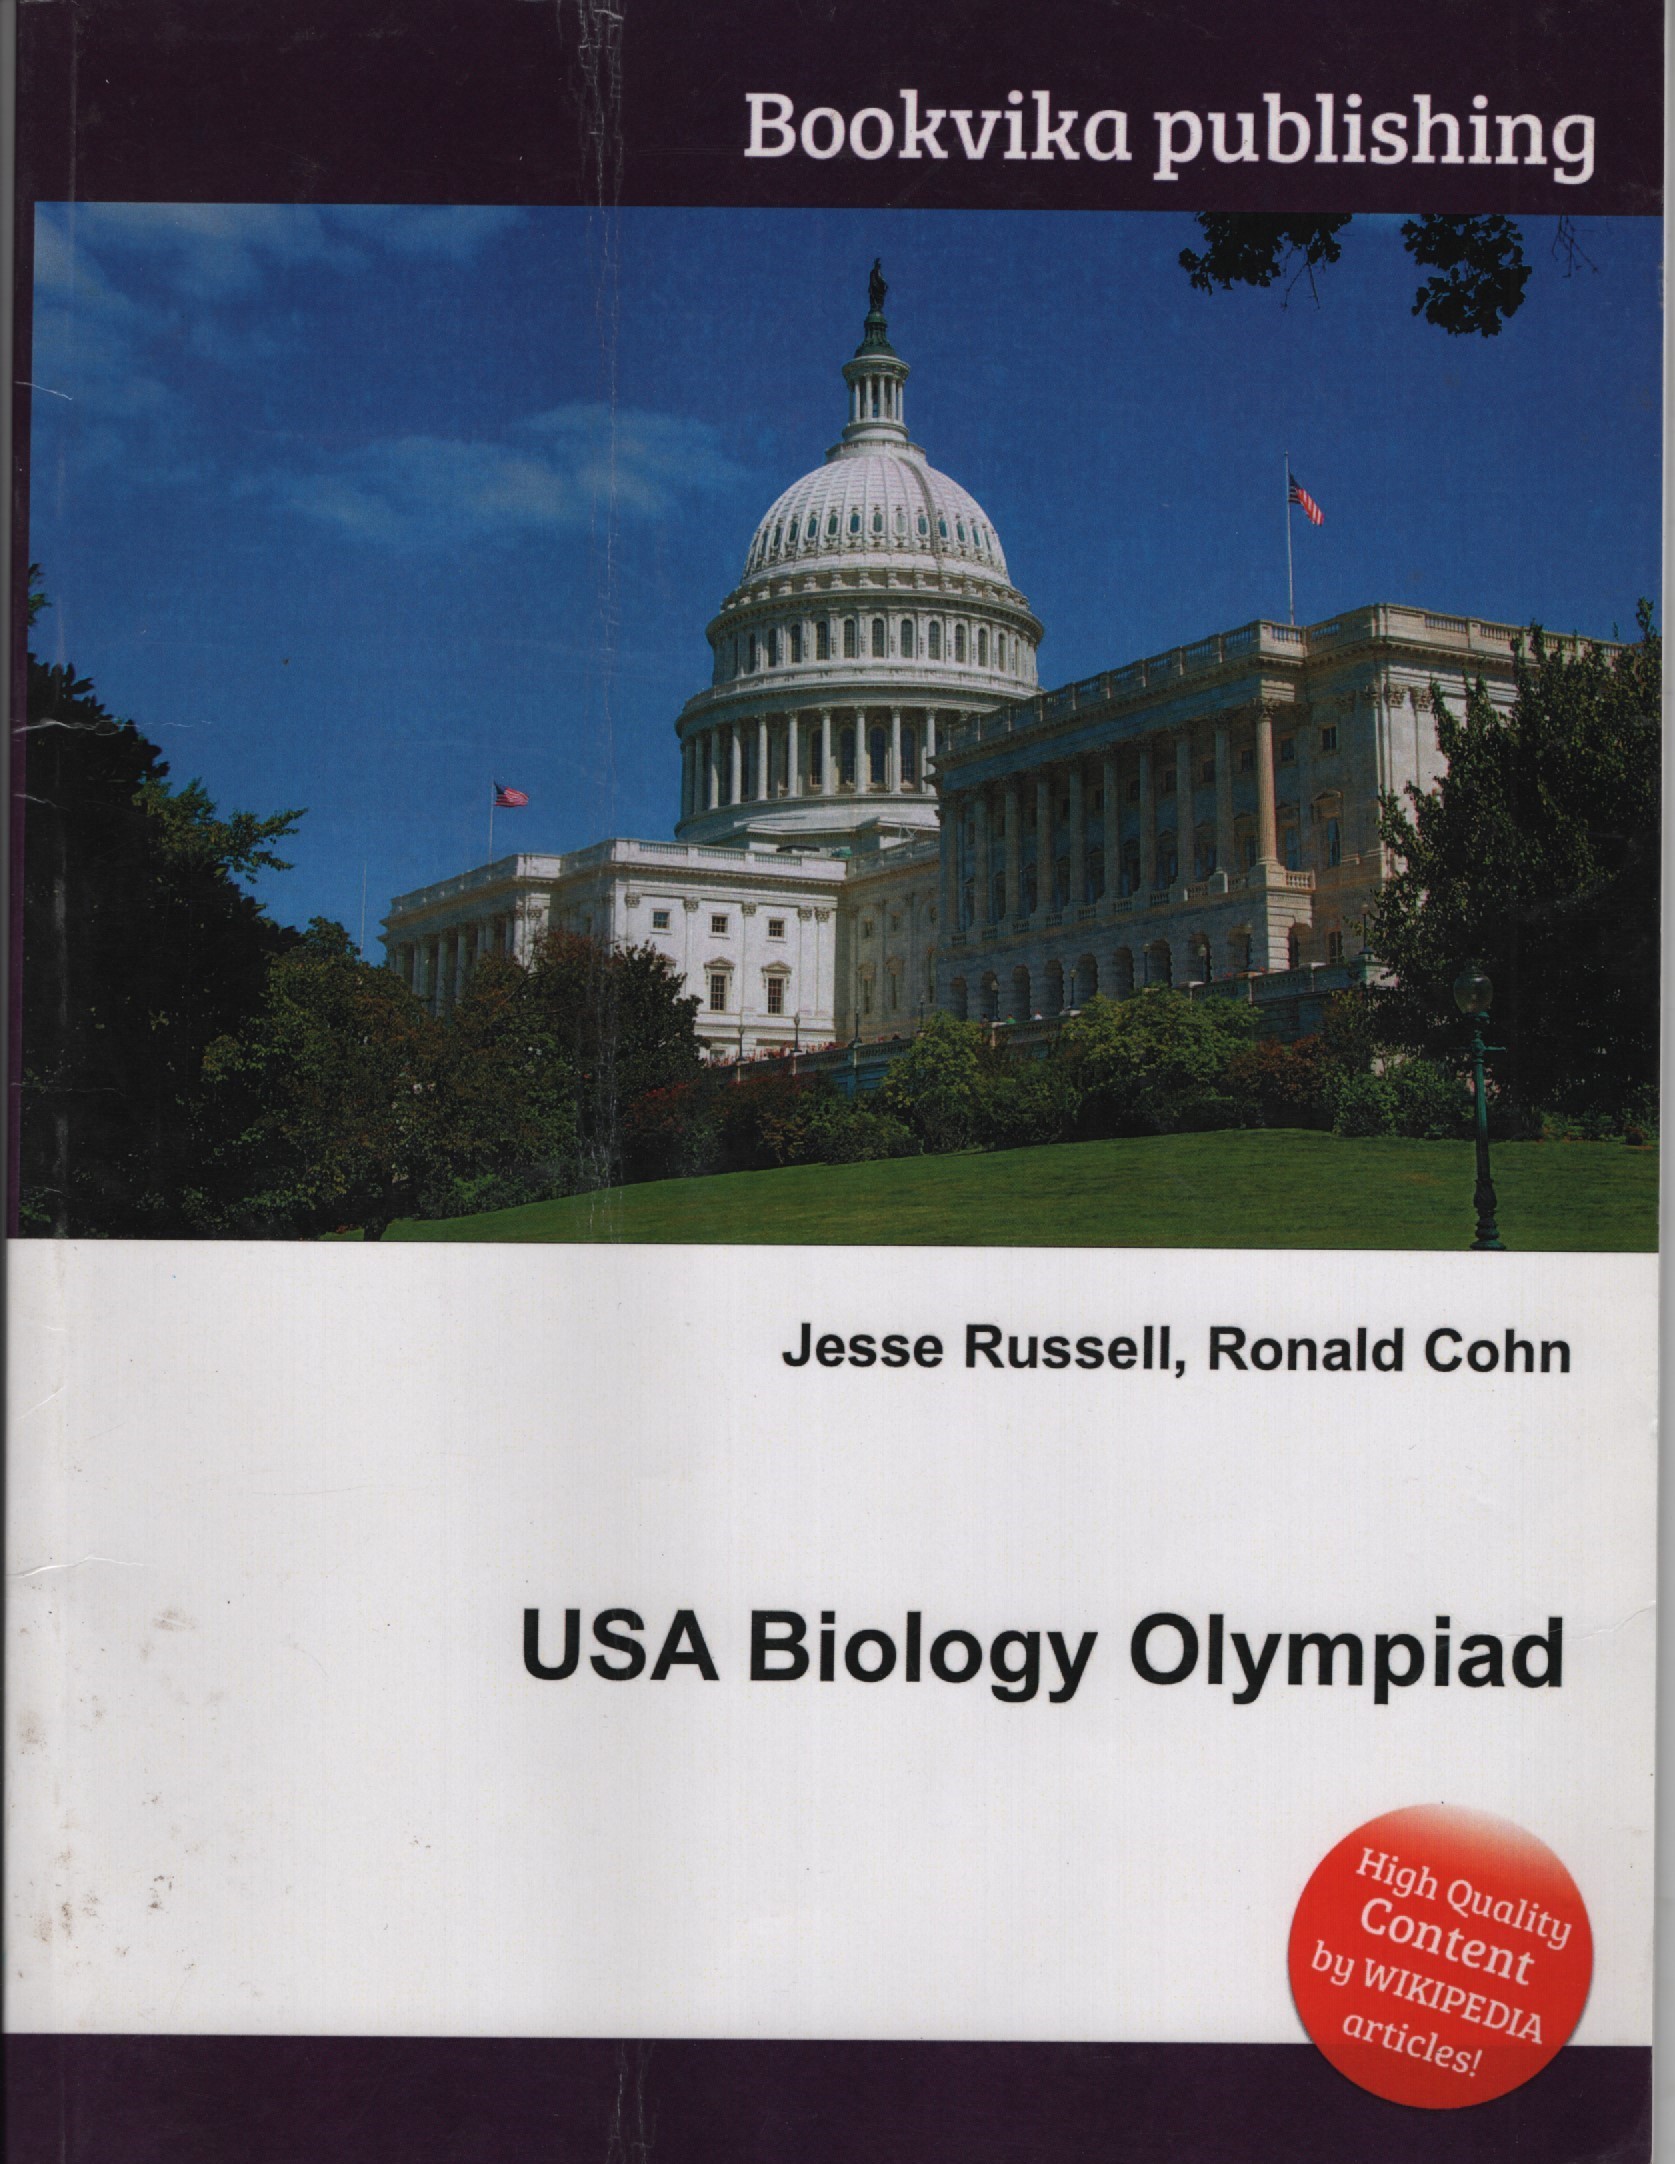 USA Biology Olympiad